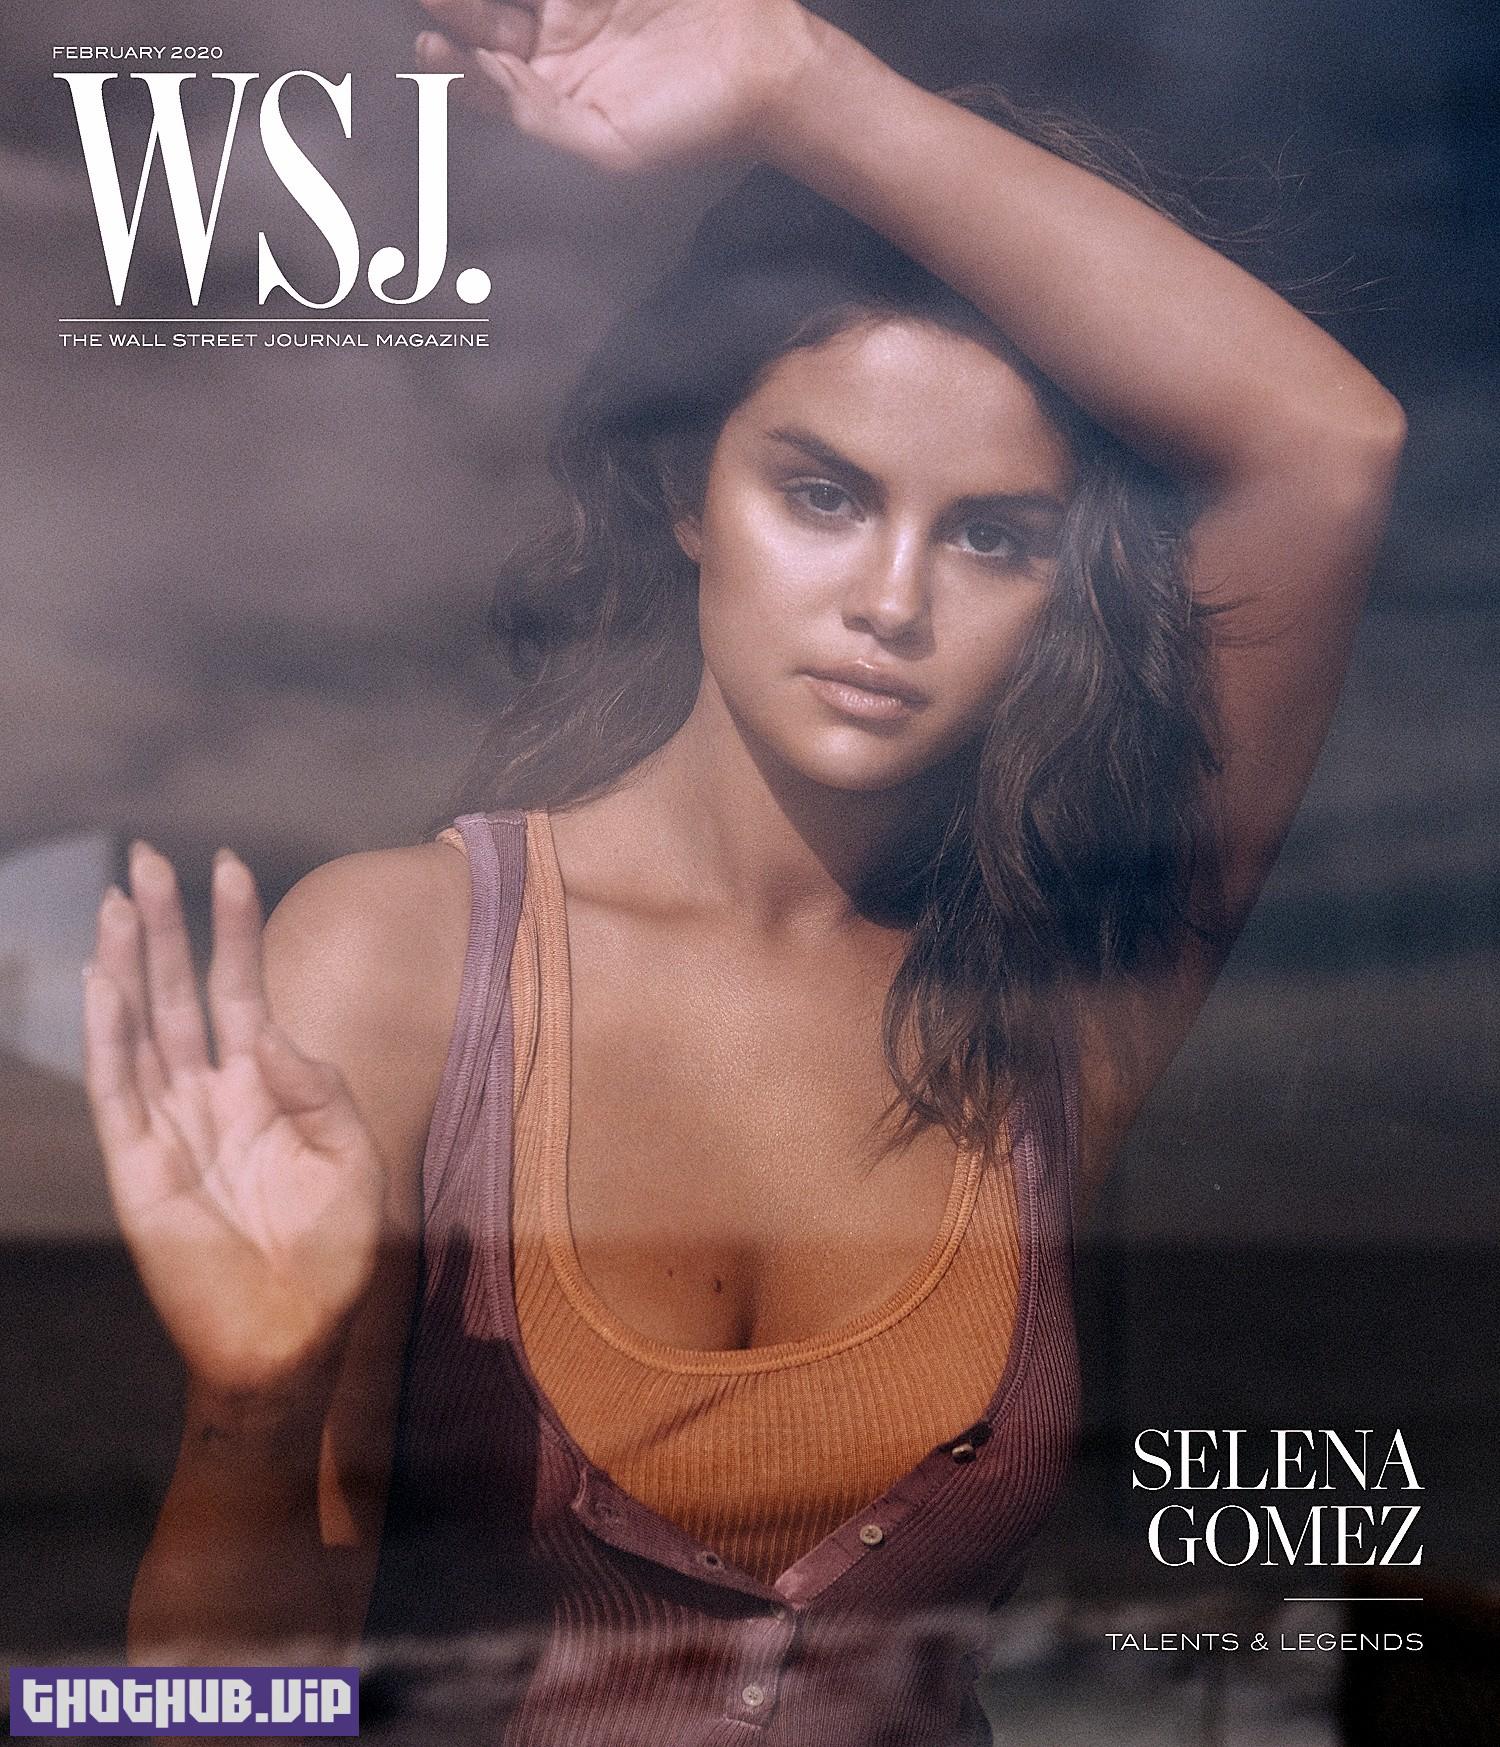 Selena Gomez for Wall Street Journal magazine